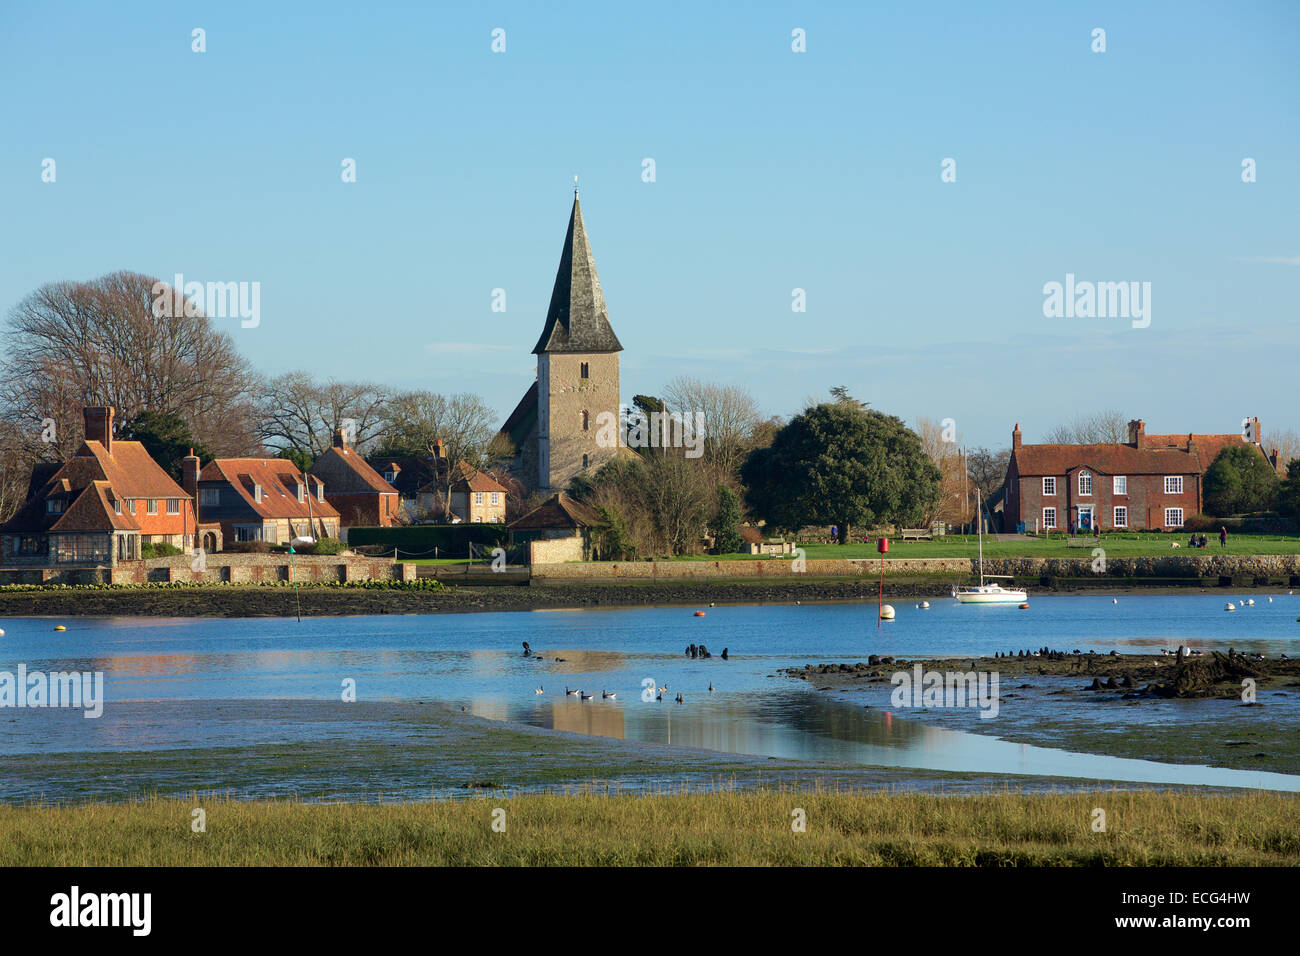 Village pittoresque. Waterside village typique en Angleterre. L'église du village est bien en évidence dans l'image. Banque D'Images